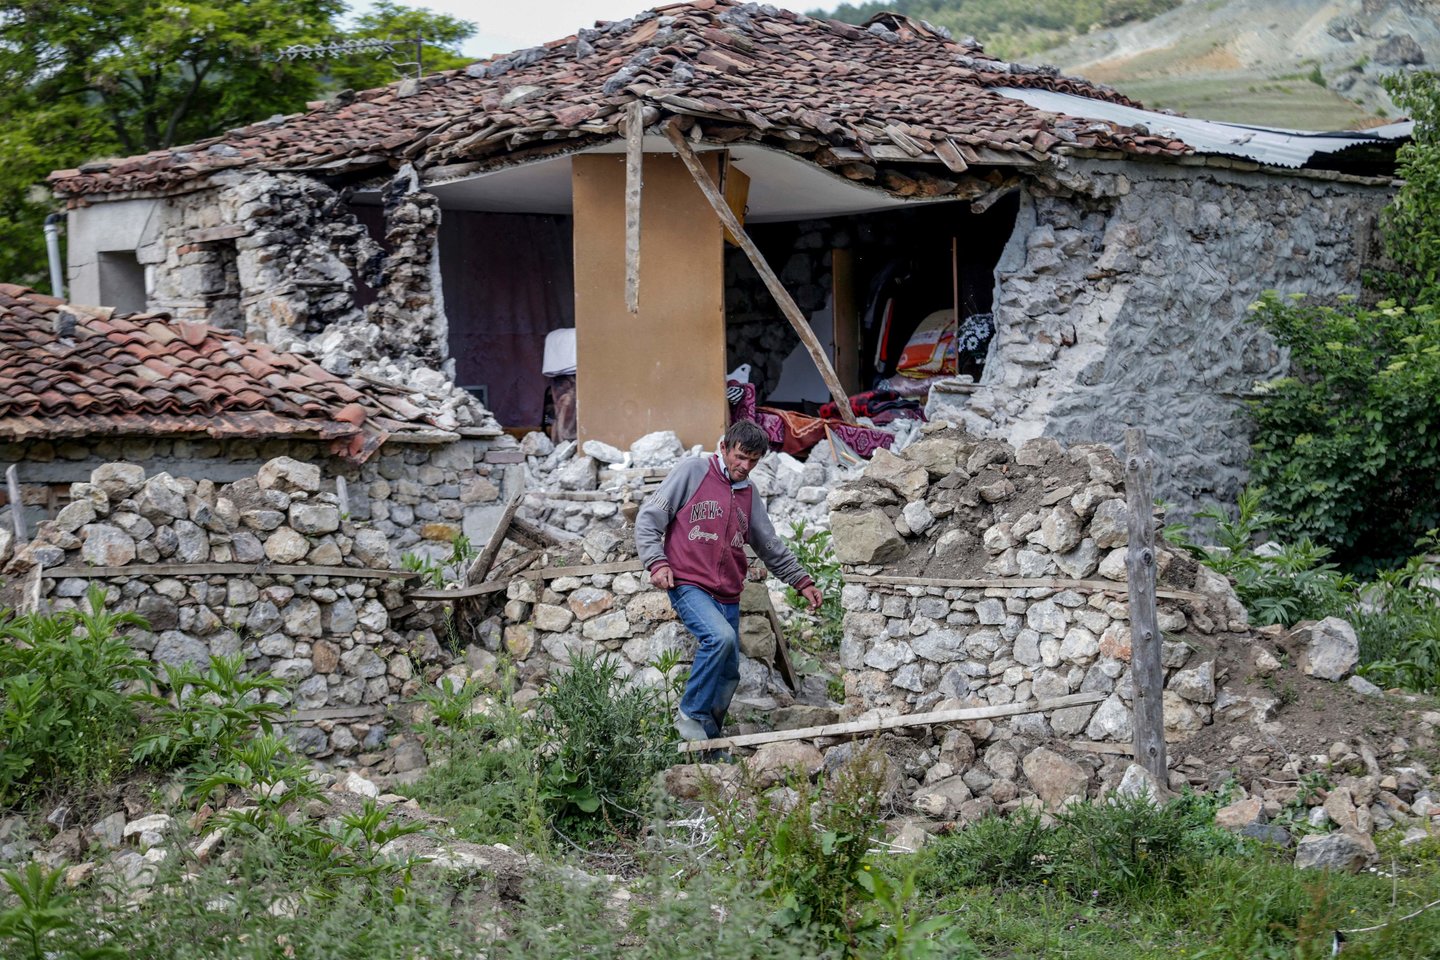  Albanijoje lapkričio 26 dieną įvyko 6,4 balo žemės drebėjimas, per kurį žuvo 51 žmogus ir dar apie 15 tūkst. liko be pastogės.<br> AP asociatyvi nuotr.